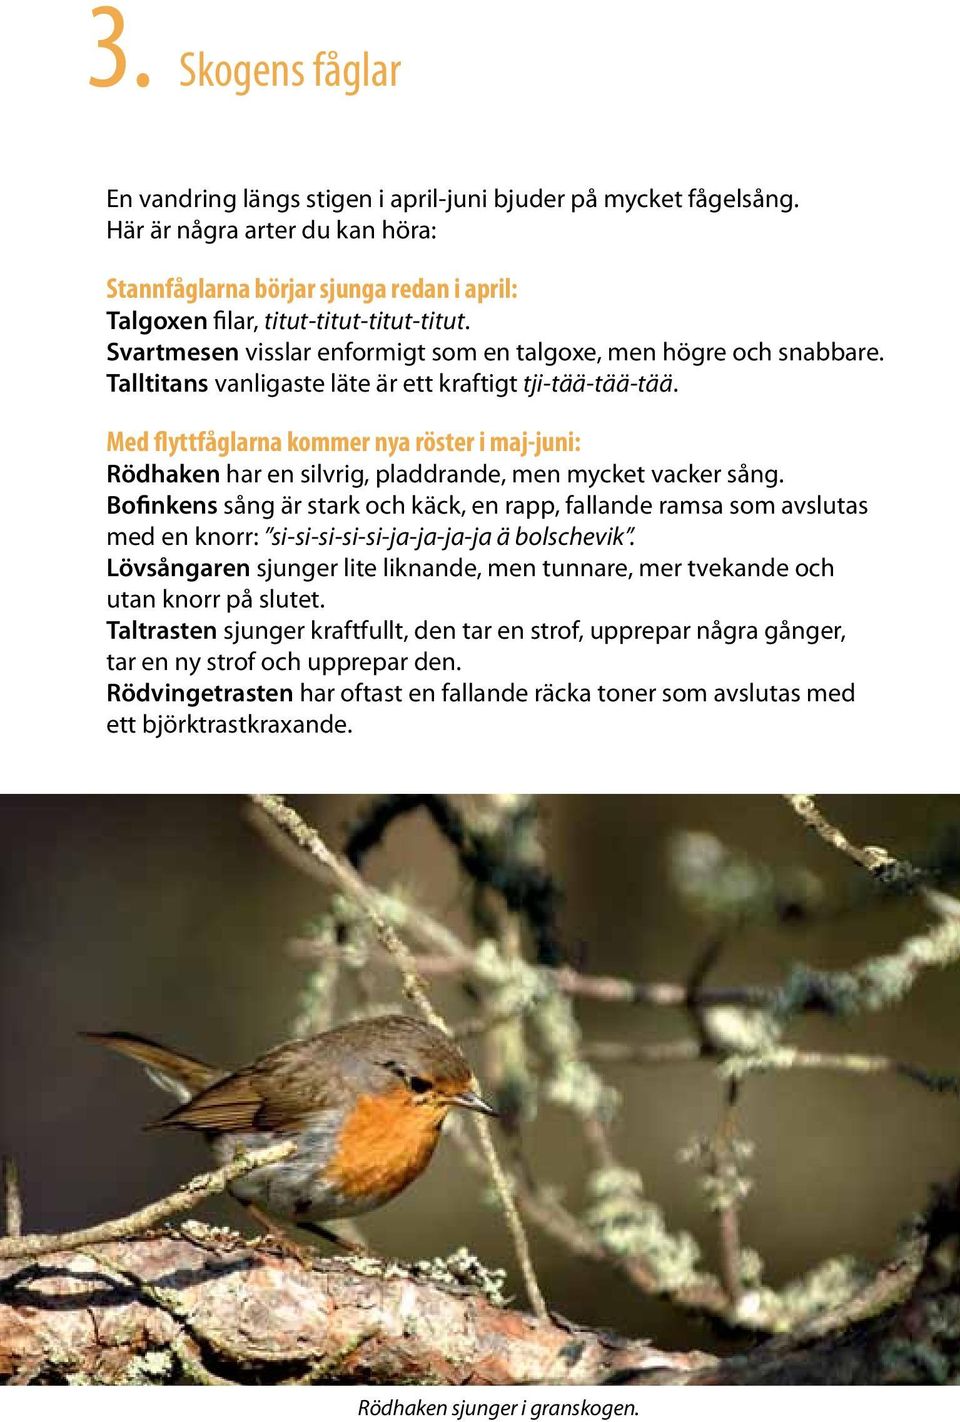 Med flyttfåglarna kommer nya röster i maj-juni: Rödhaken har en silvrig, pladdrande, men mycket vacker sång.